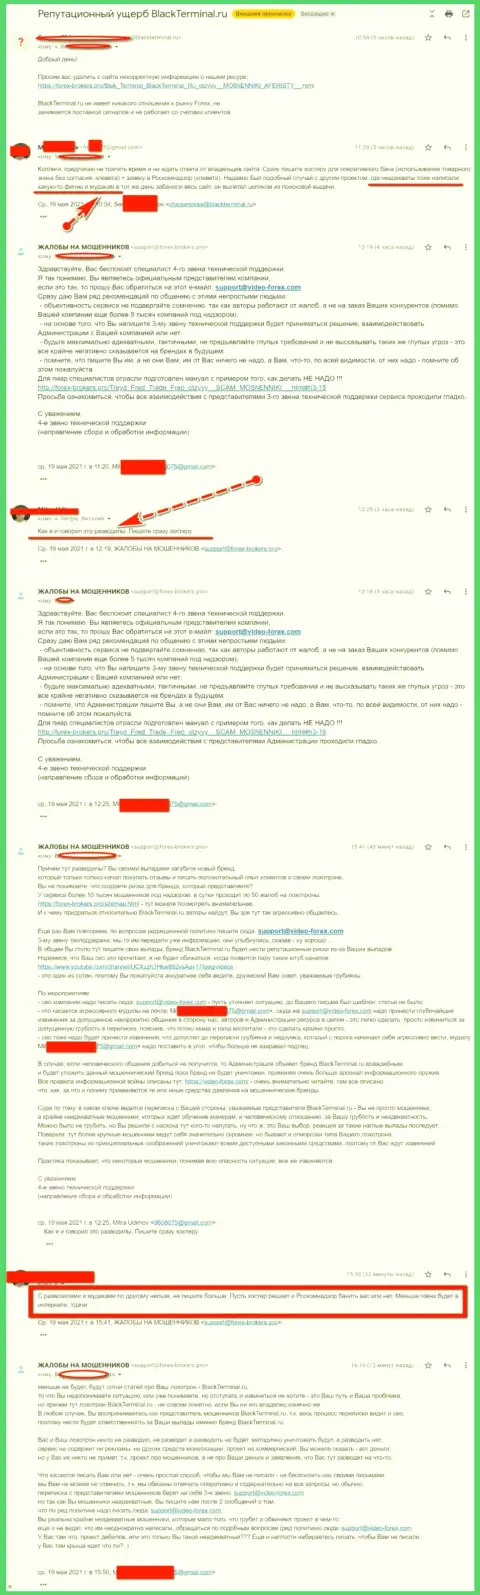 Онлайн переписка Администрации сайта, с отзывами об BlackTerminal, с некими представителями этого противозаконно действующего онлайн-сервиса